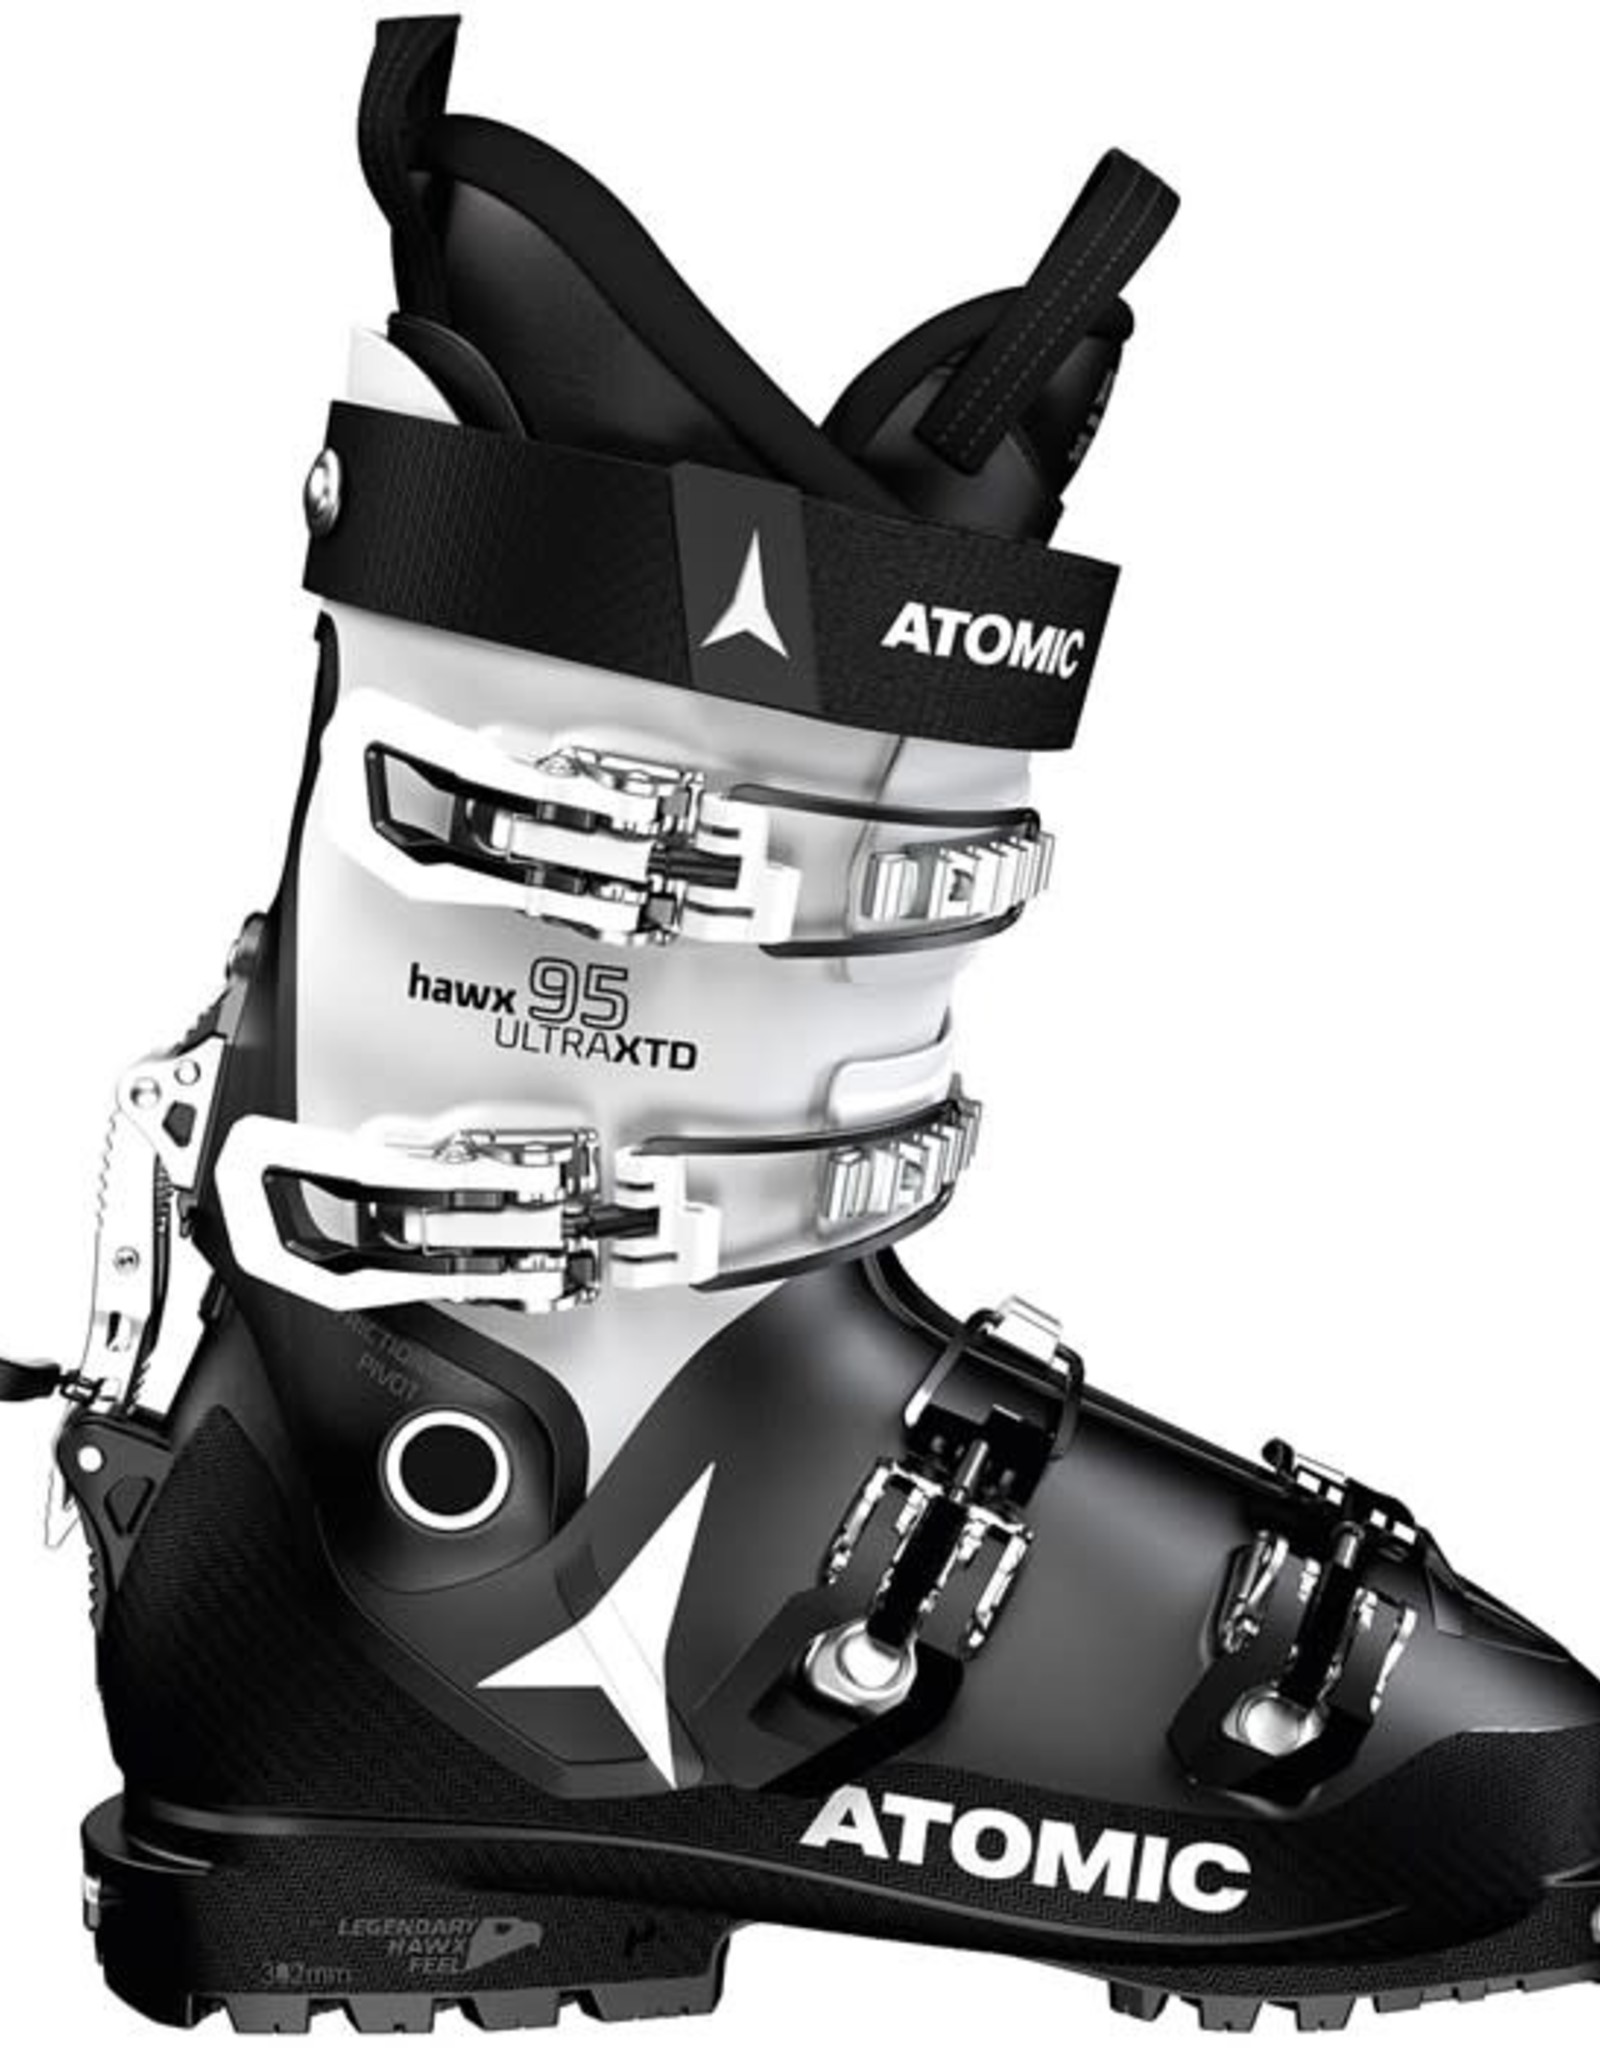 Sunburn Bungalow Mainstream ATOMIC Ski Boots HAWX ULTRA XTD 95 W CT GW (21/22) - Alpine Hut